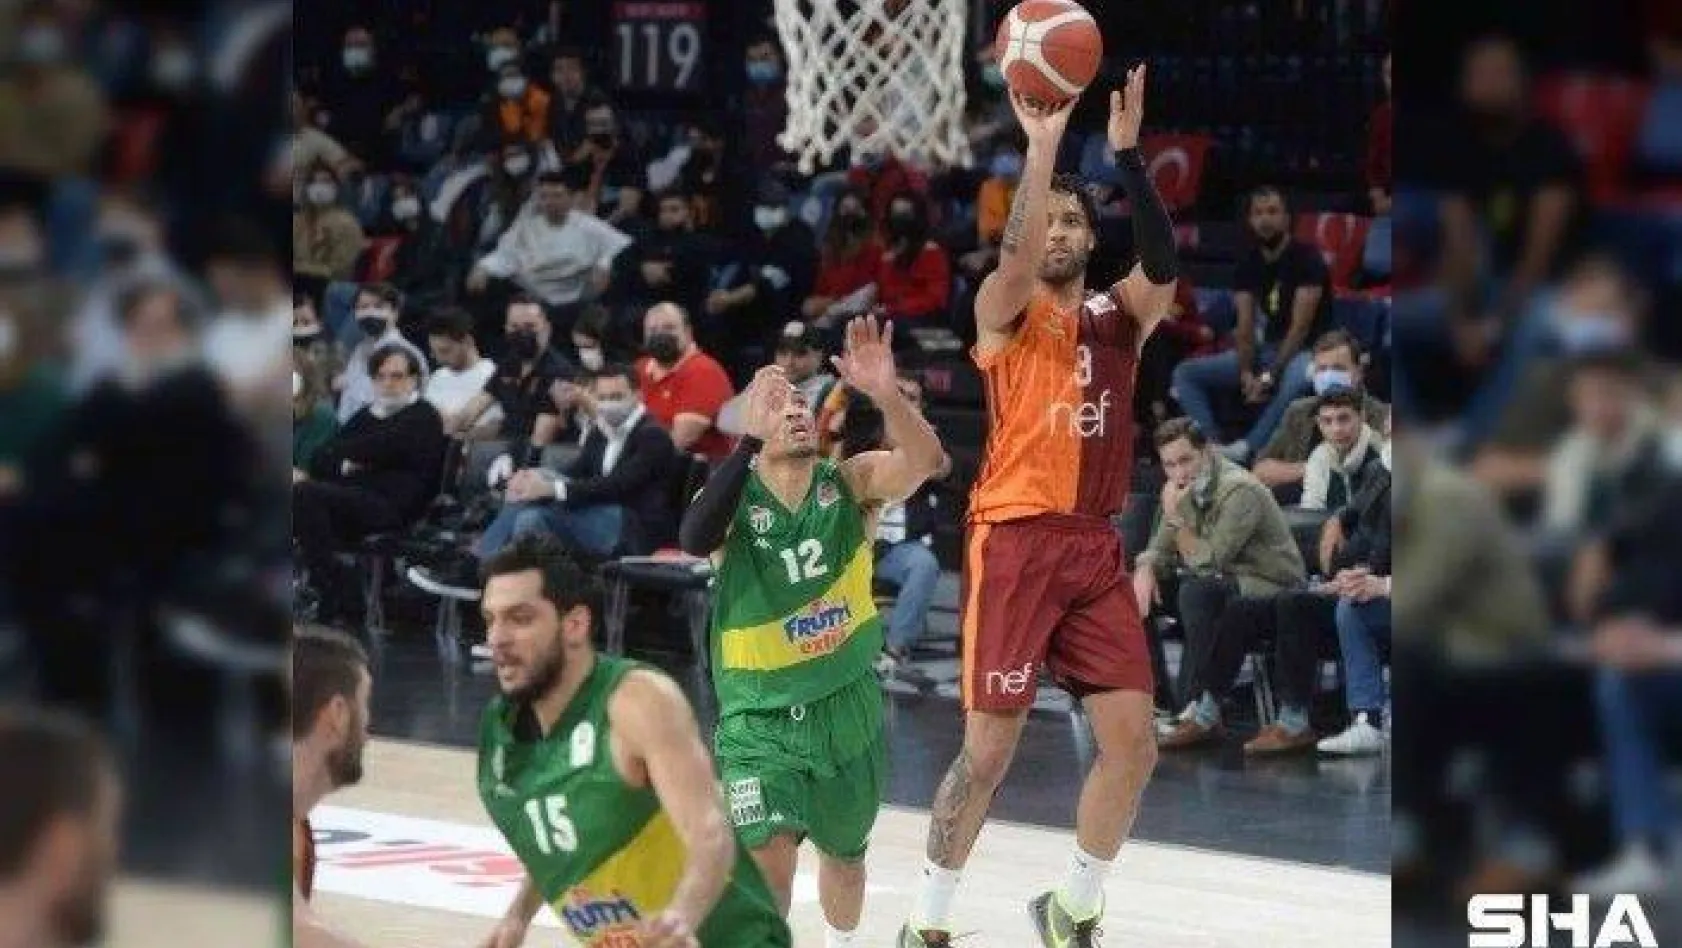 ING Basketbol Süper Ligi: Galatasaray: 99 - Bursaspor: 84